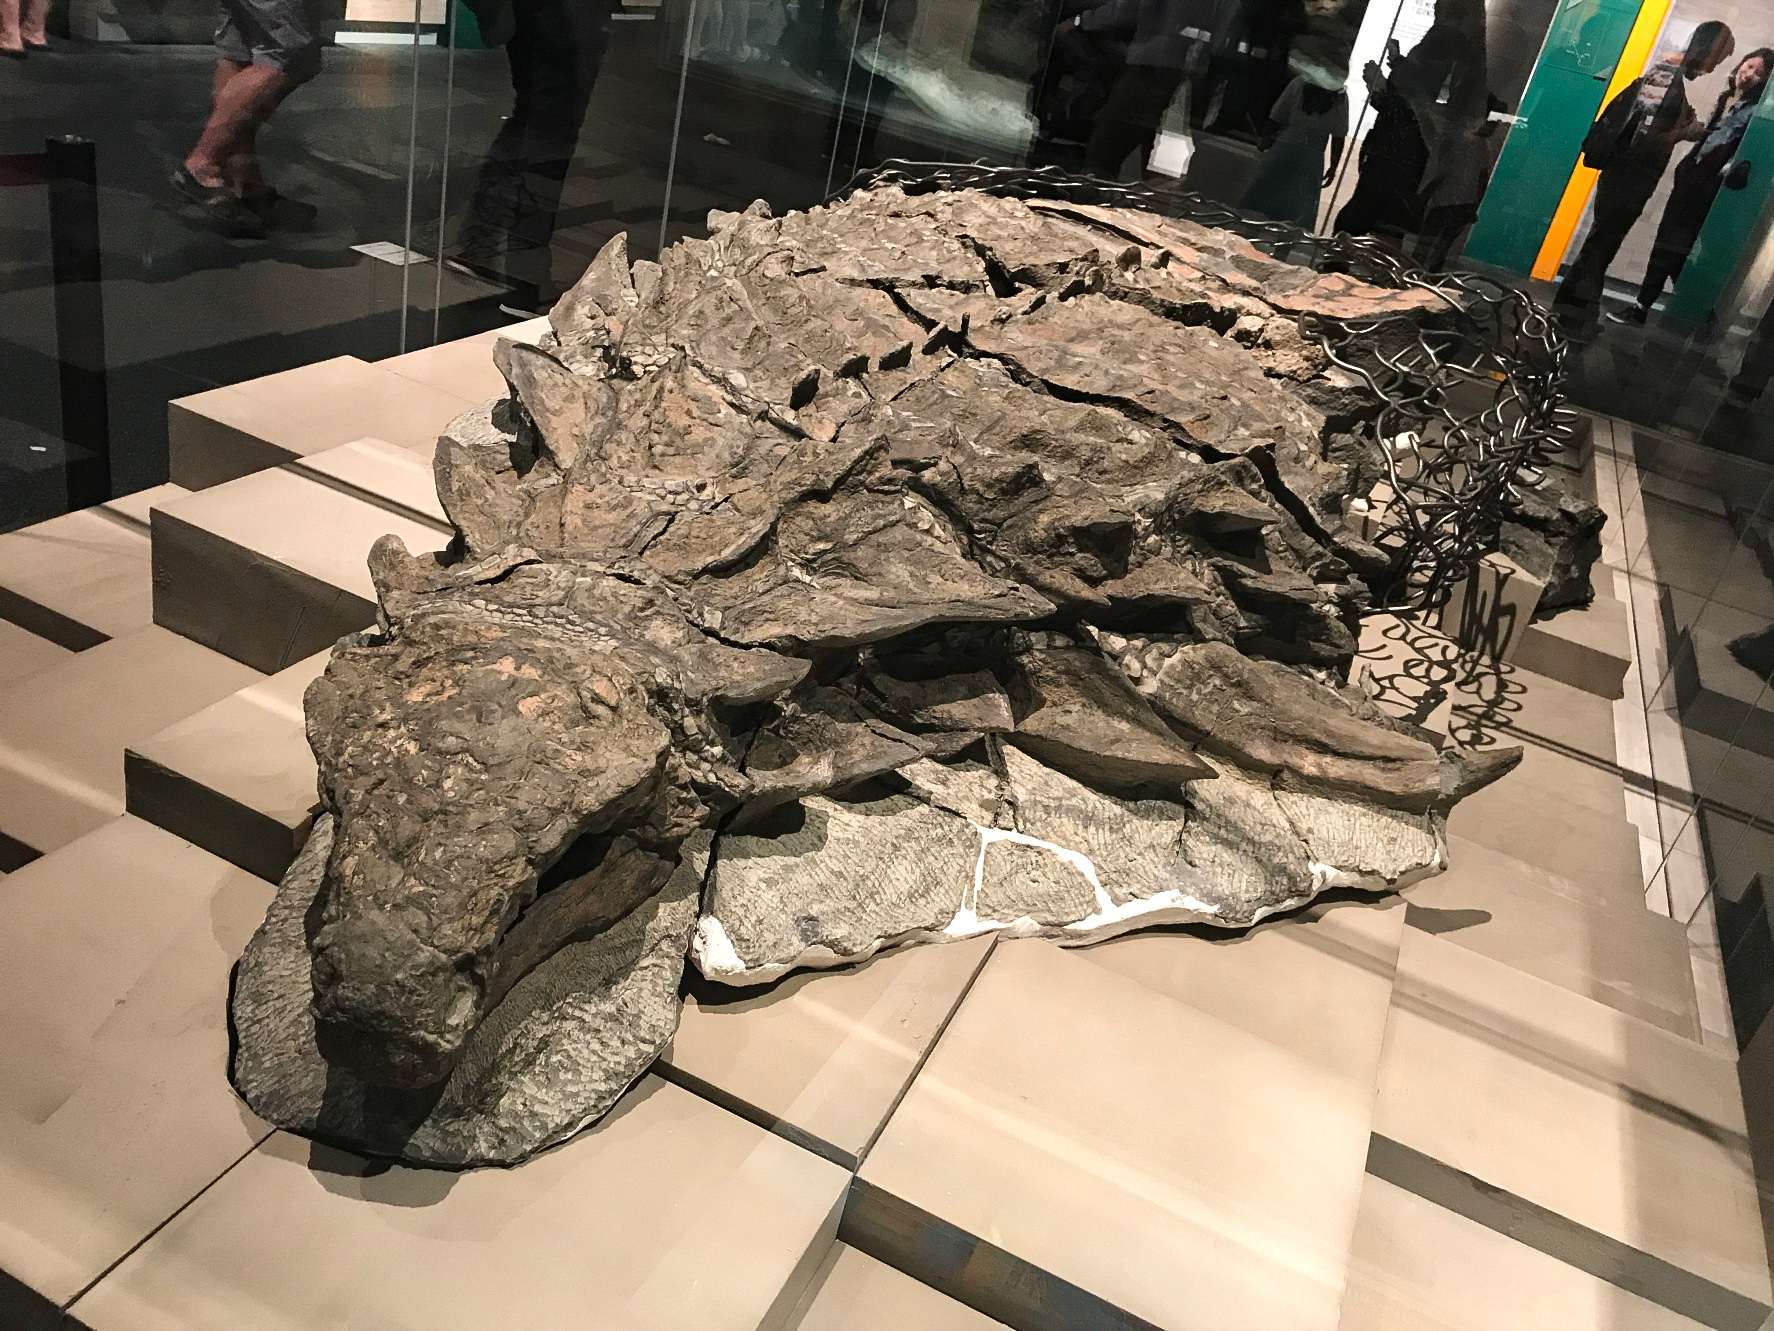 Borealopelta (berarti "perisai Utara") adalah genus ankylosaur nodosaurus dari Kapur Awal Alberta, Kanada. Ini berisi satu spesies, B. markmitchelli, dinamai pada tahun 2017 oleh Caleb Brown dan rekan-rekannya dari spesimen yang diawetkan dengan baik yang dikenal sebagai Suncor nodosaur.